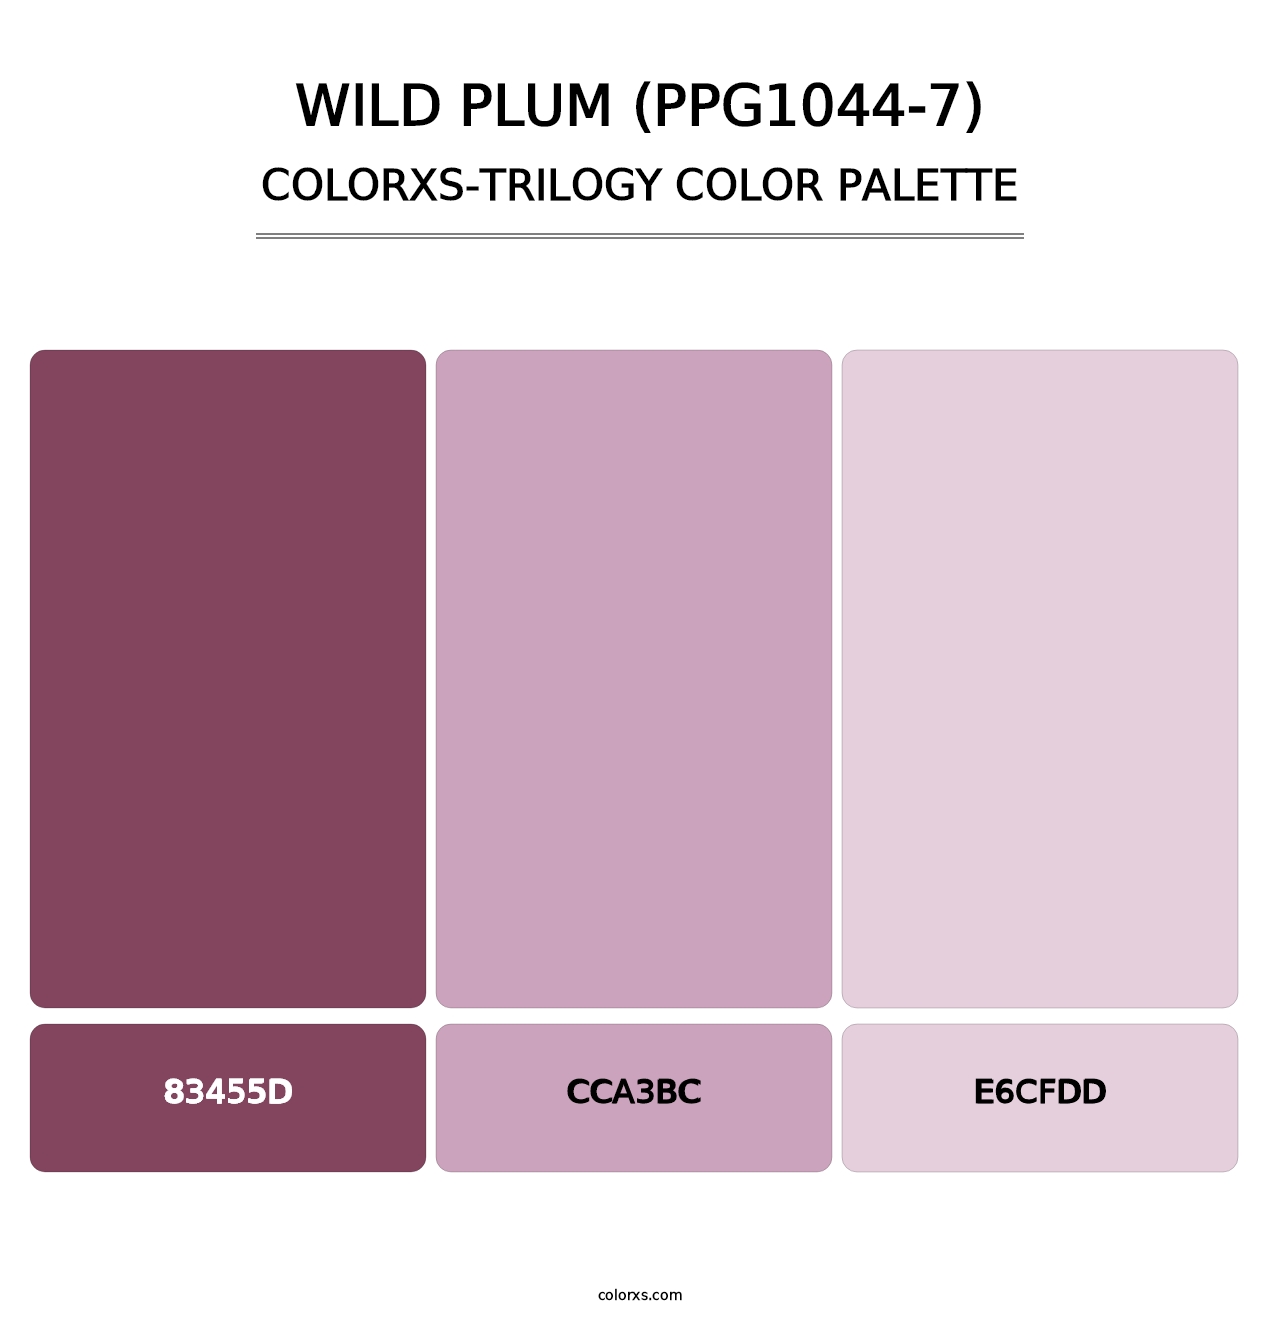 Wild Plum (PPG1044-7) - Colorxs Trilogy Palette